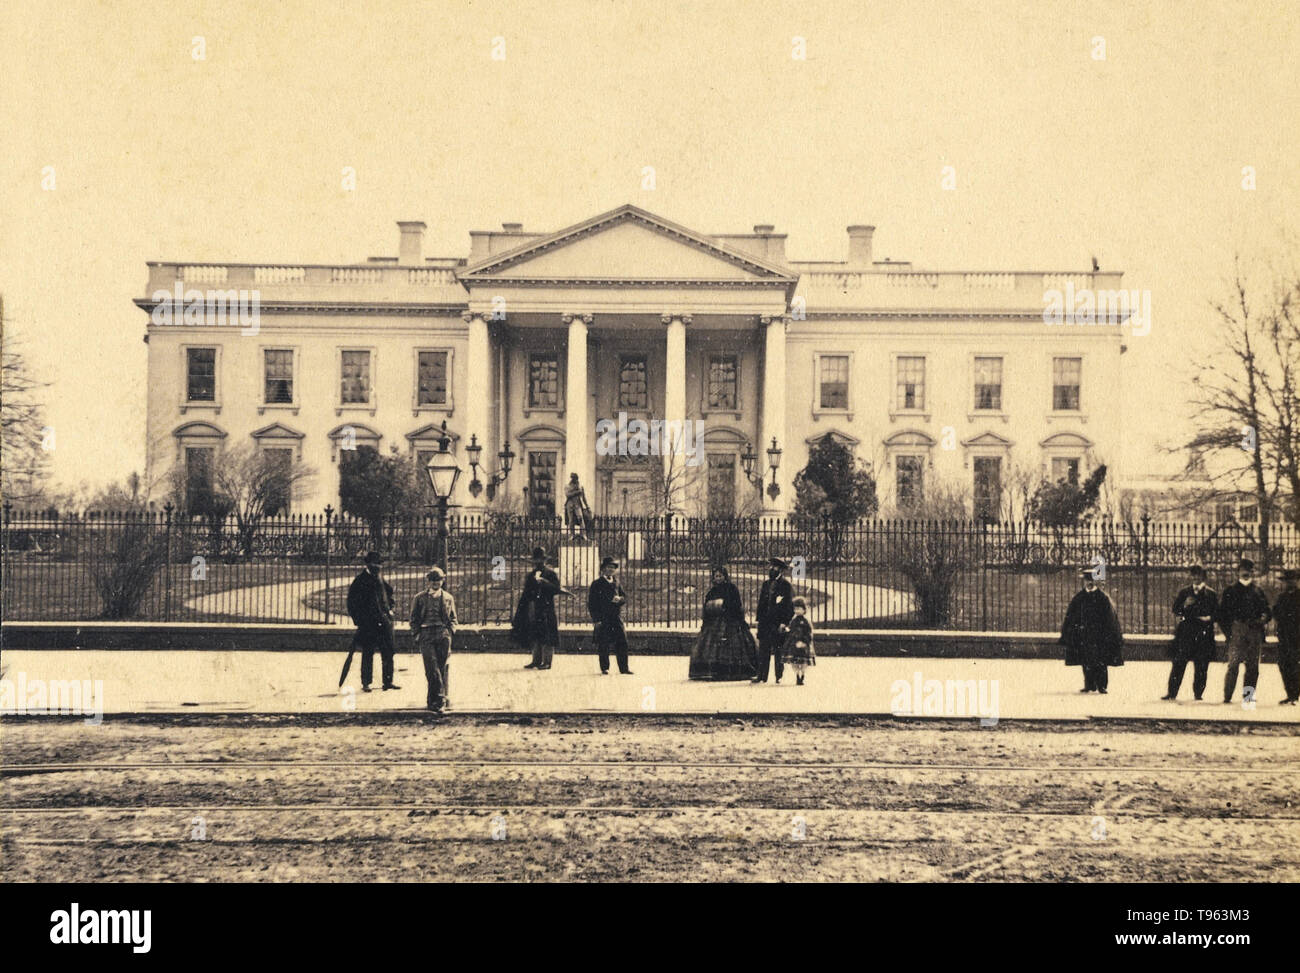 Das Weiße Haus in Washington D.C., 1866. Fotografiert von George D. Wakely (Amerikanisch, aktiv 1856 - 1880). Eiklar Silber drucken. Stockfoto